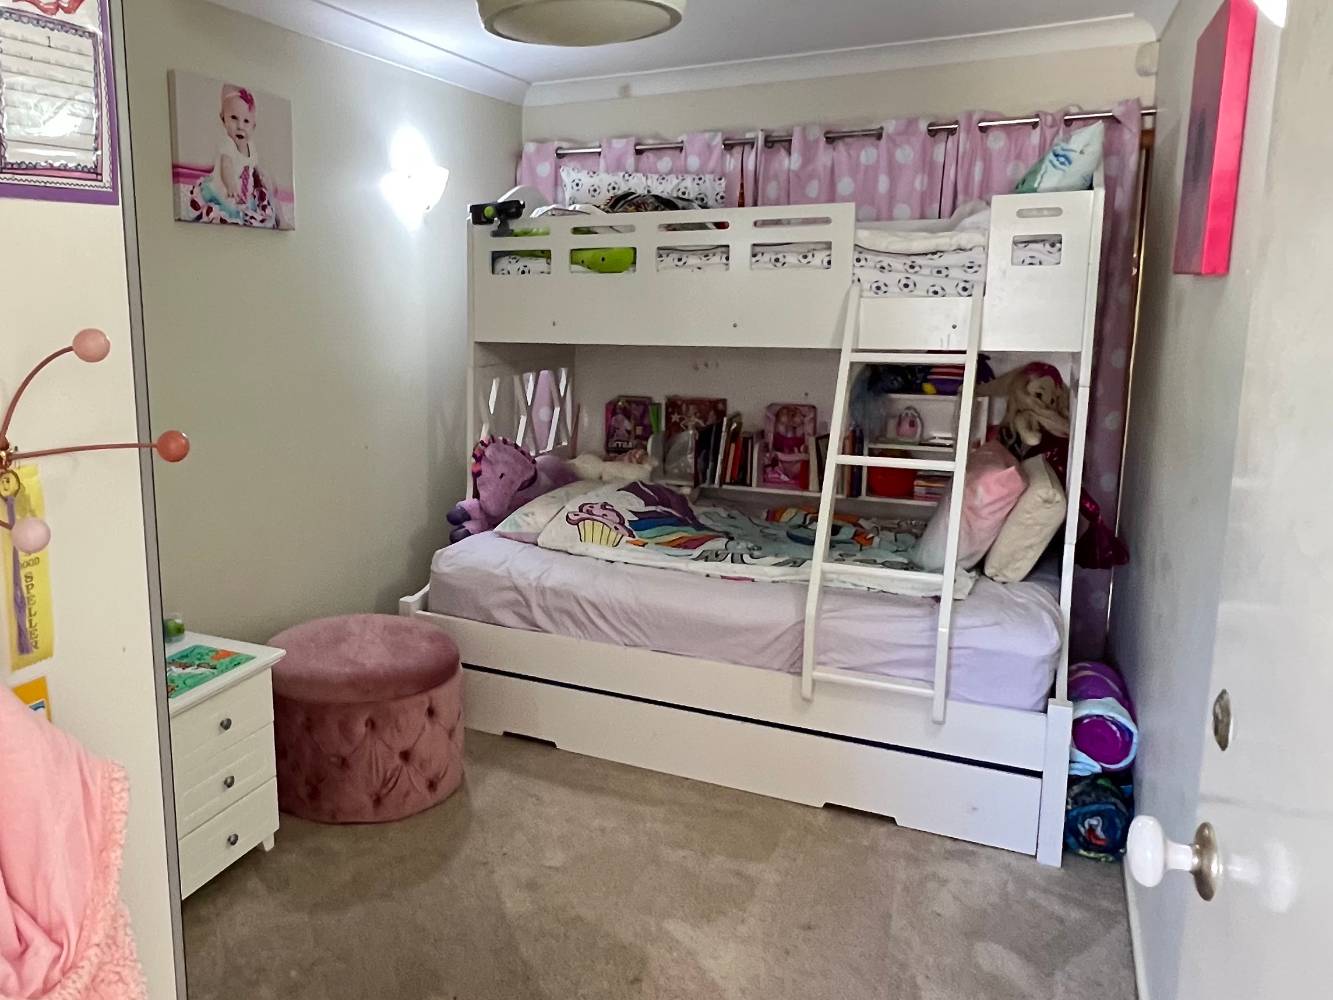 Children's bedroom